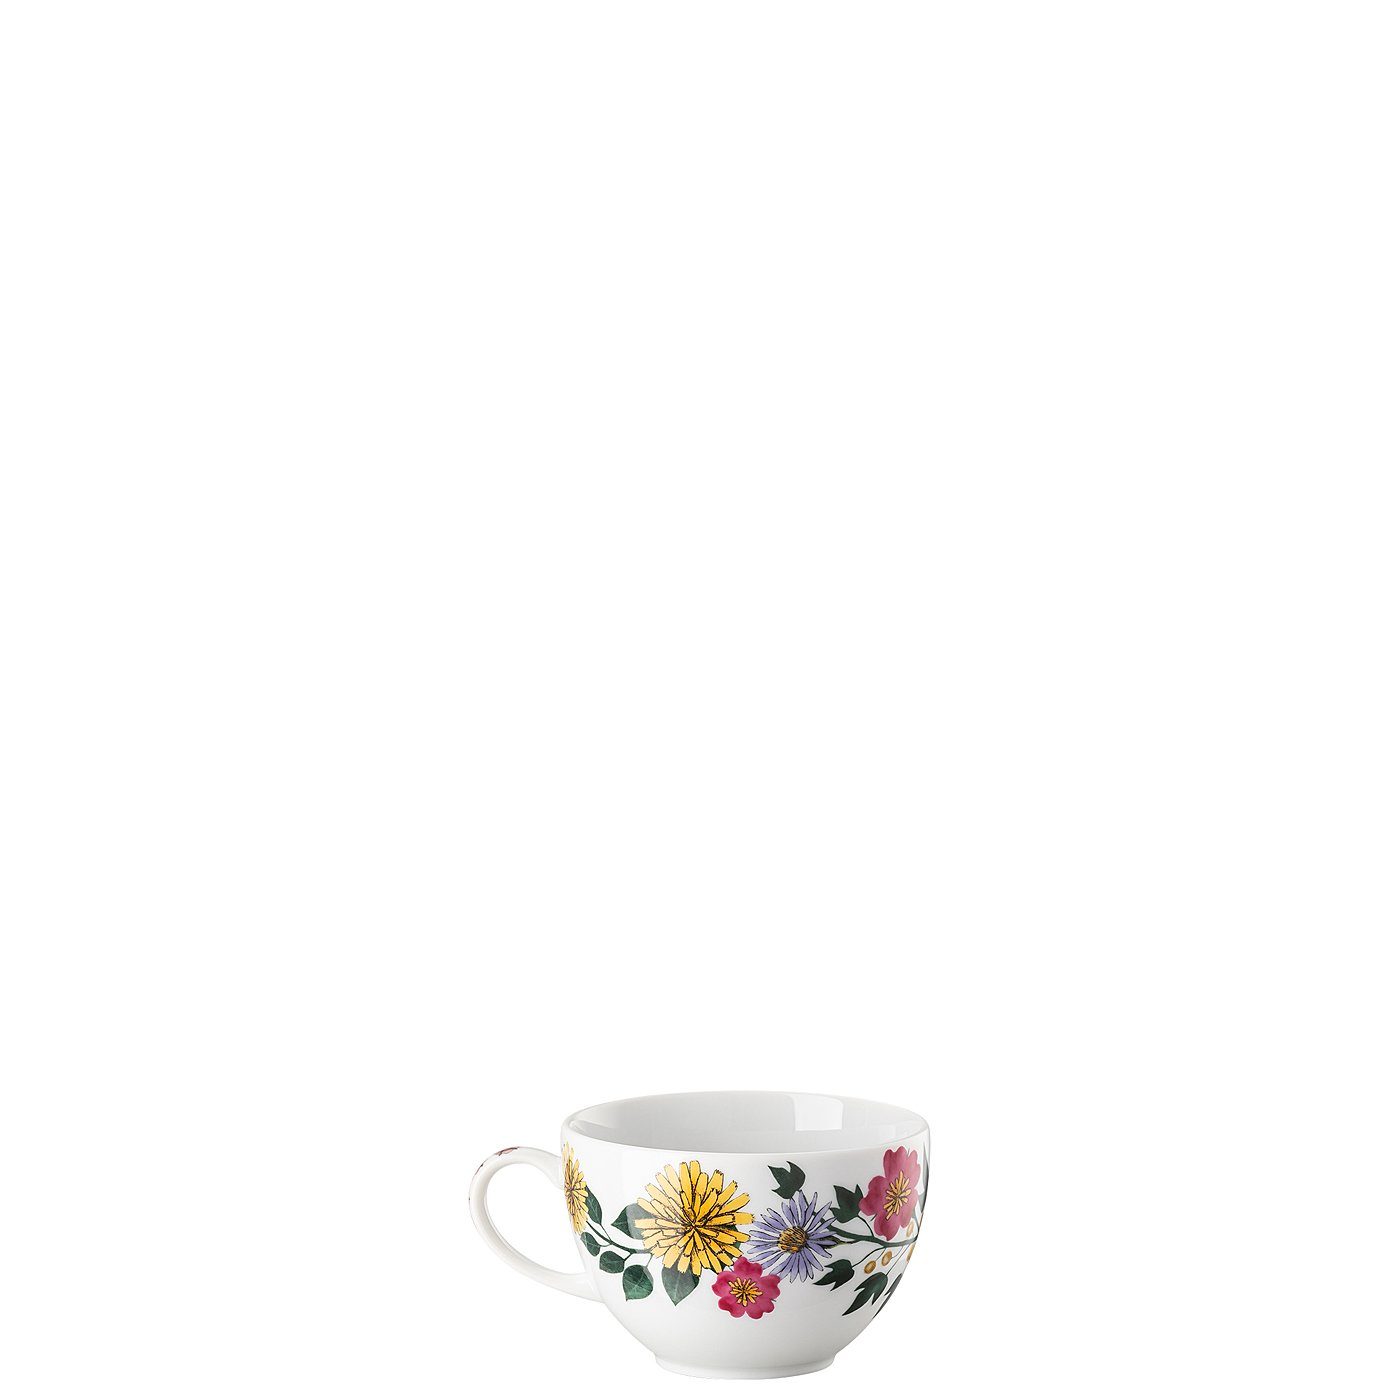 Rosenthal Tasse Henkel, Porzellan neuem Tee-Obertasse Magic Garden mit Blossom